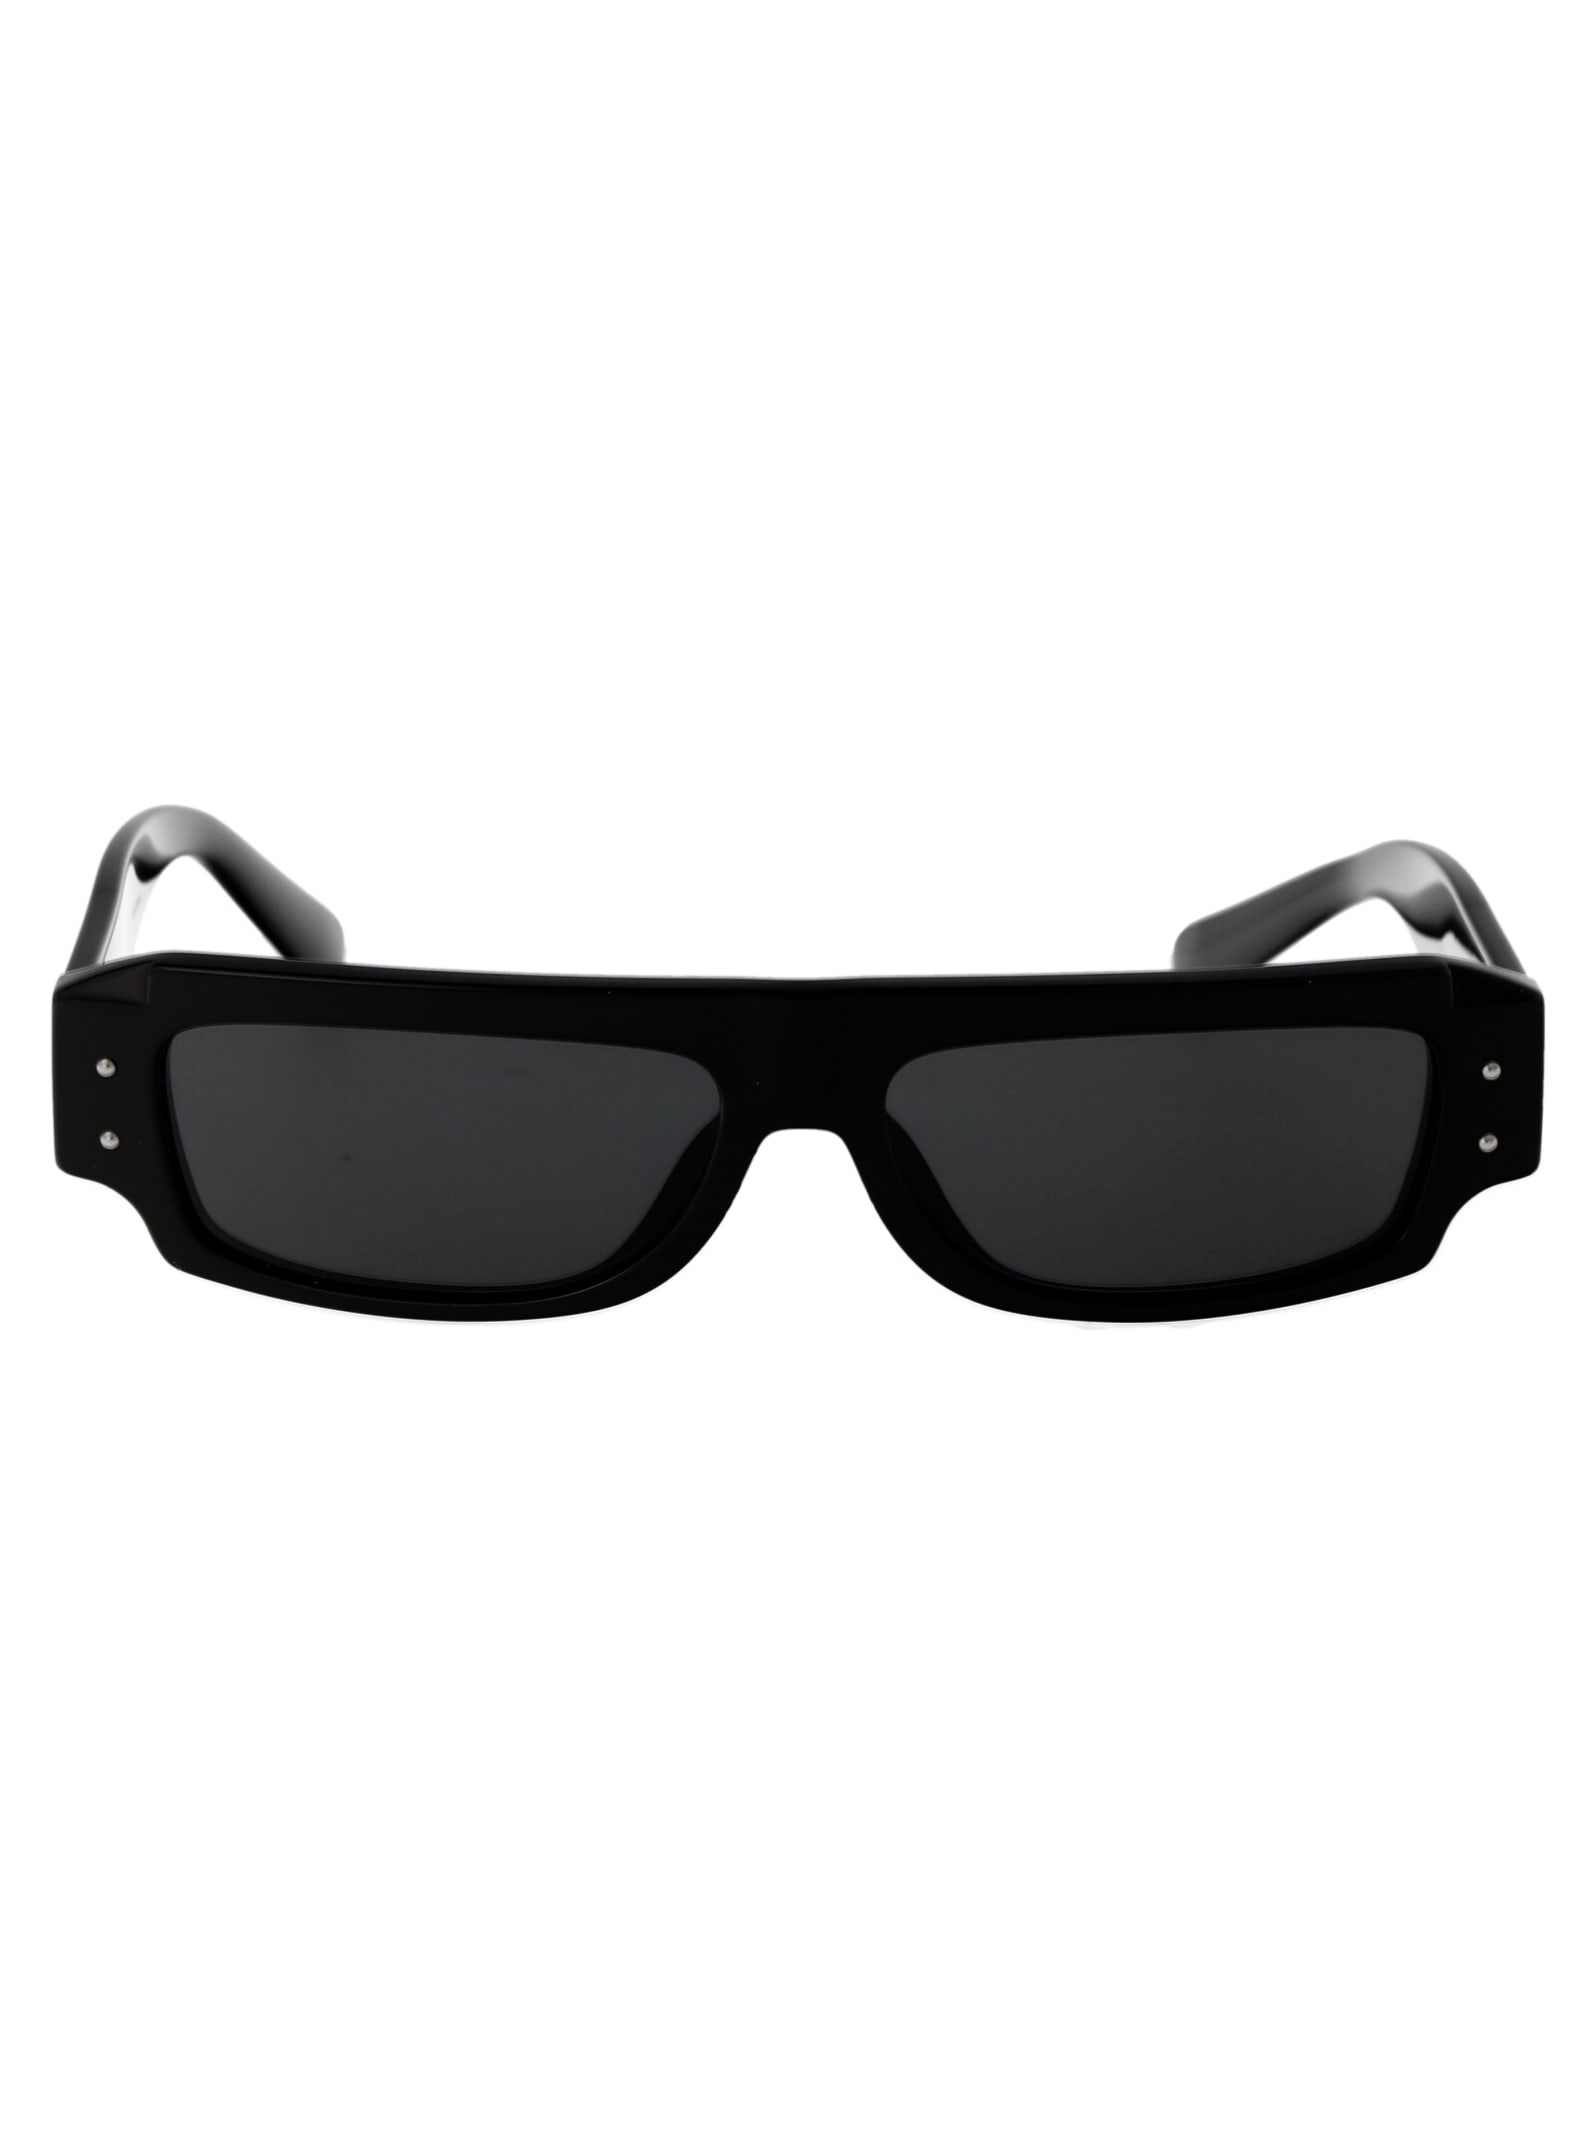 0dg4458 Sunglasses